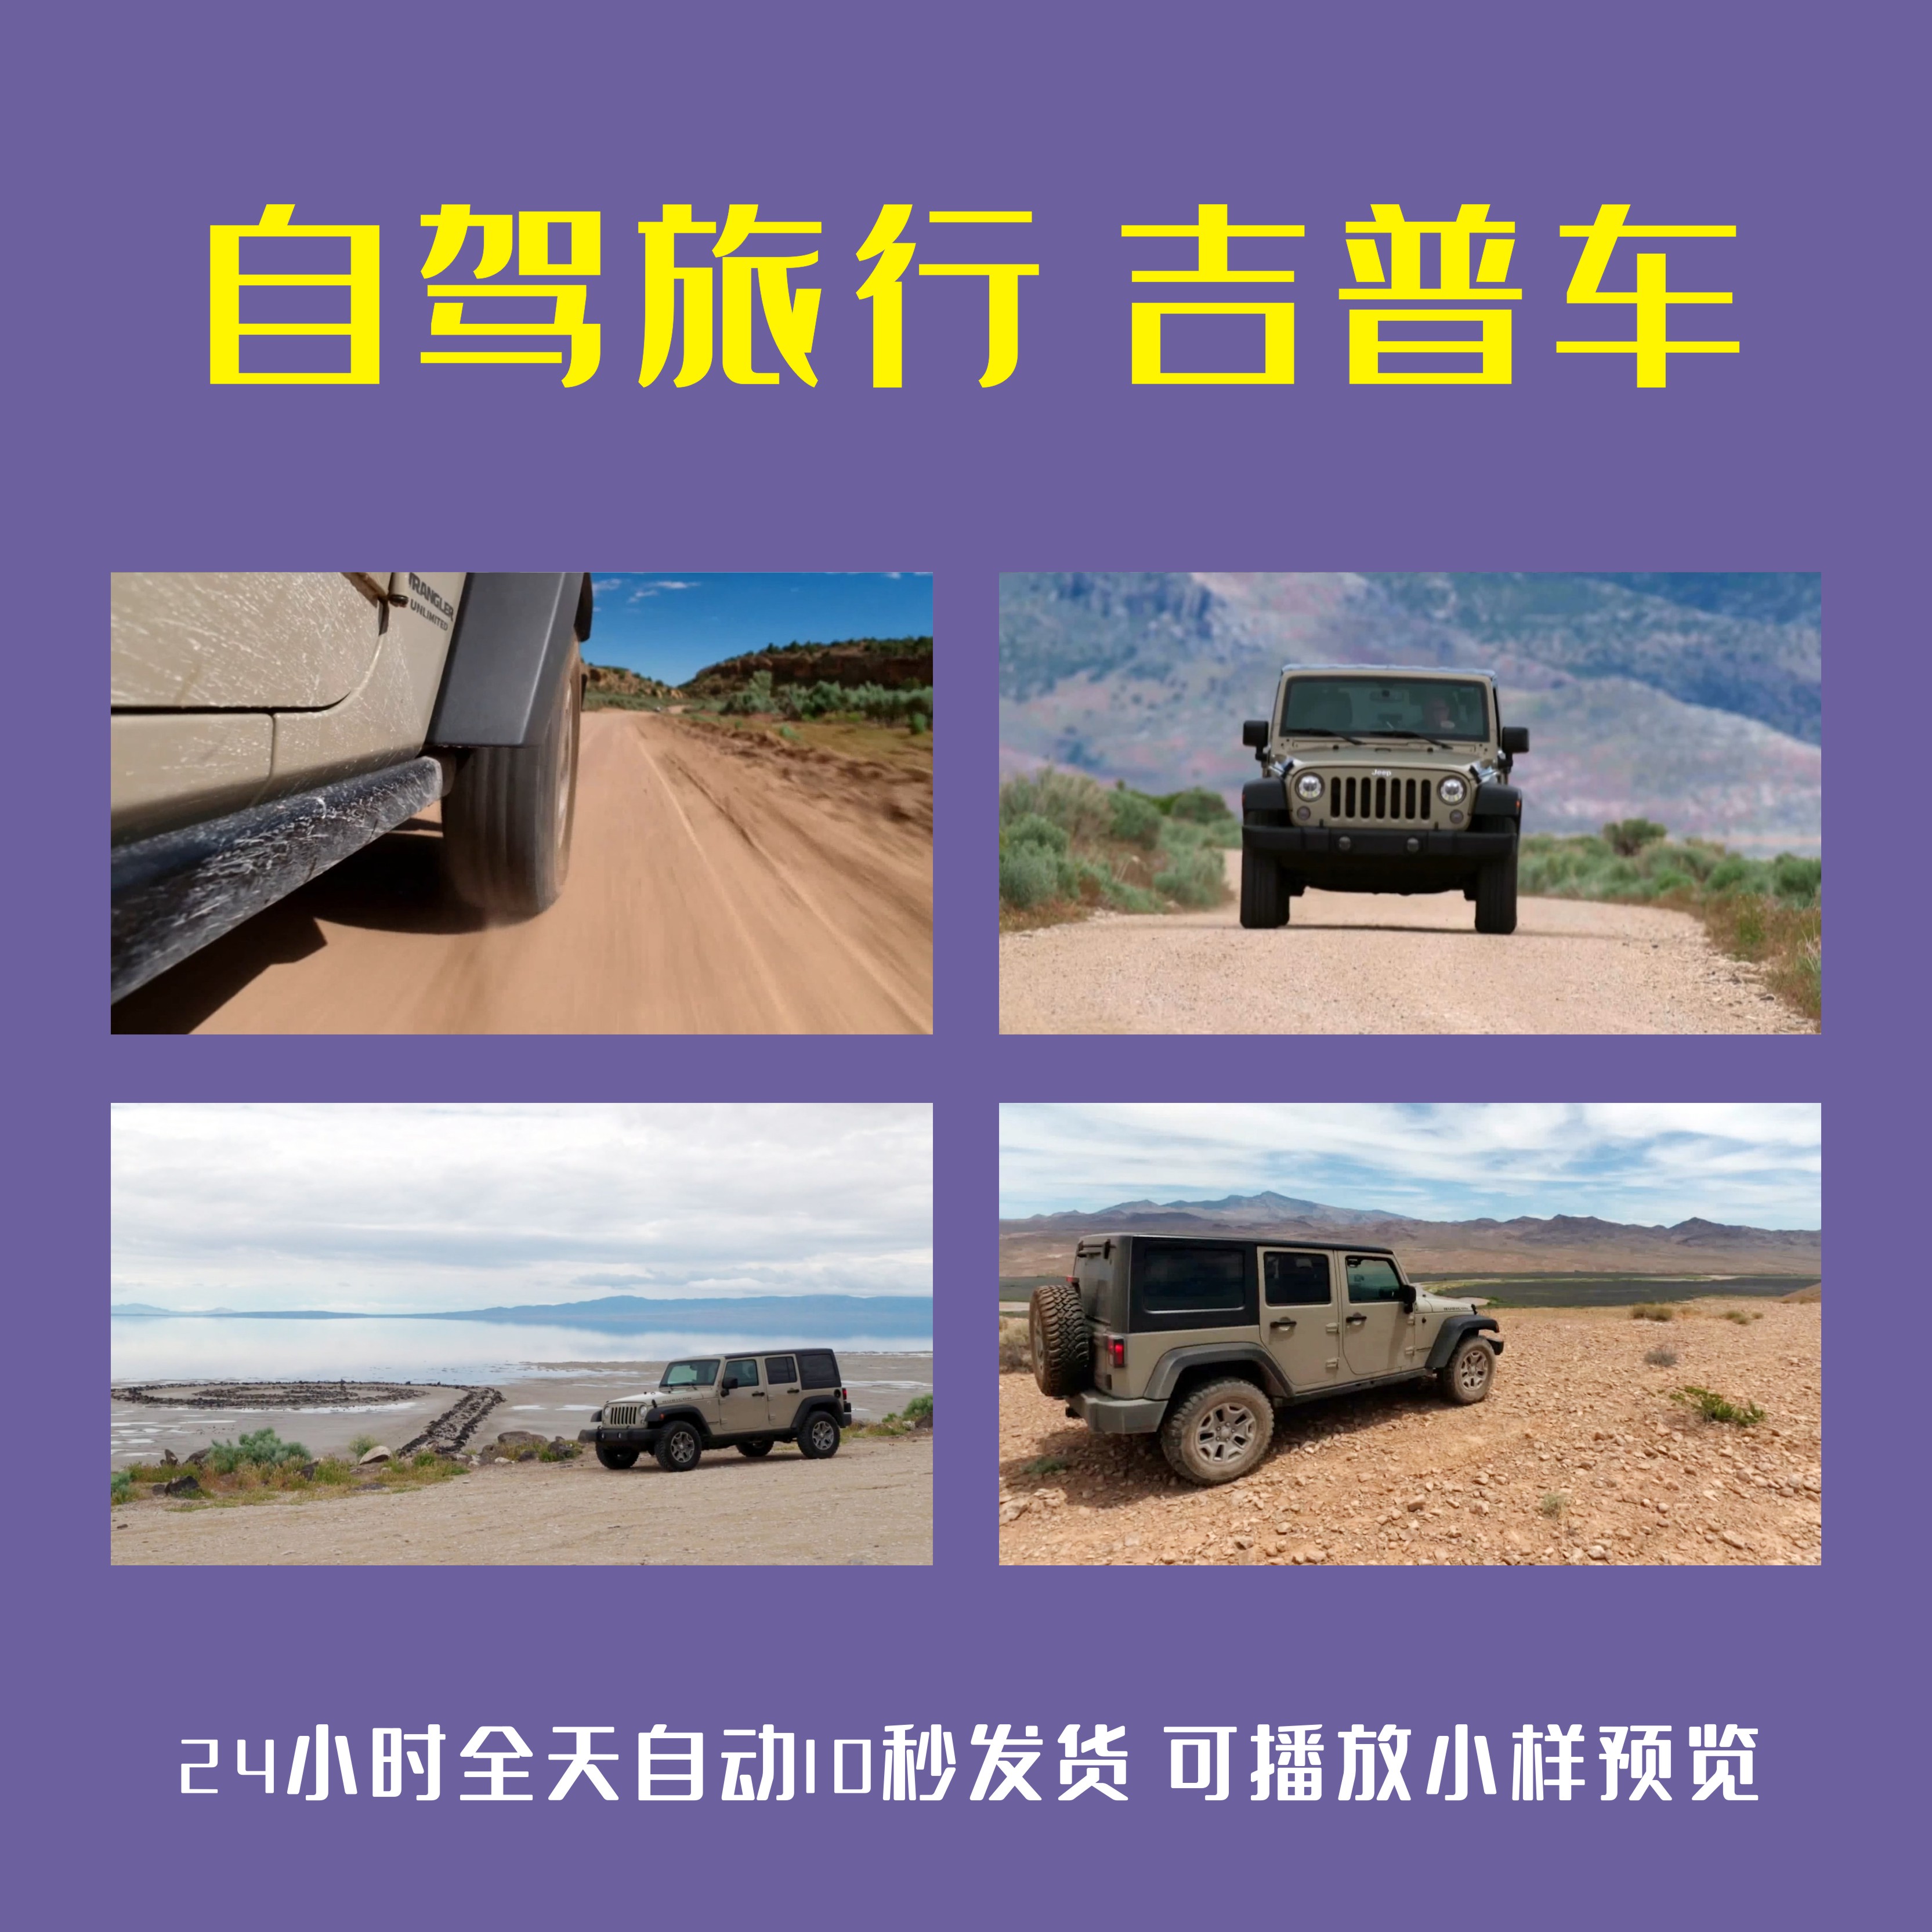 自驾旅行吉普车JEEP越野荒漠沙漠戈壁沙滩无人区旅游广告视频素材